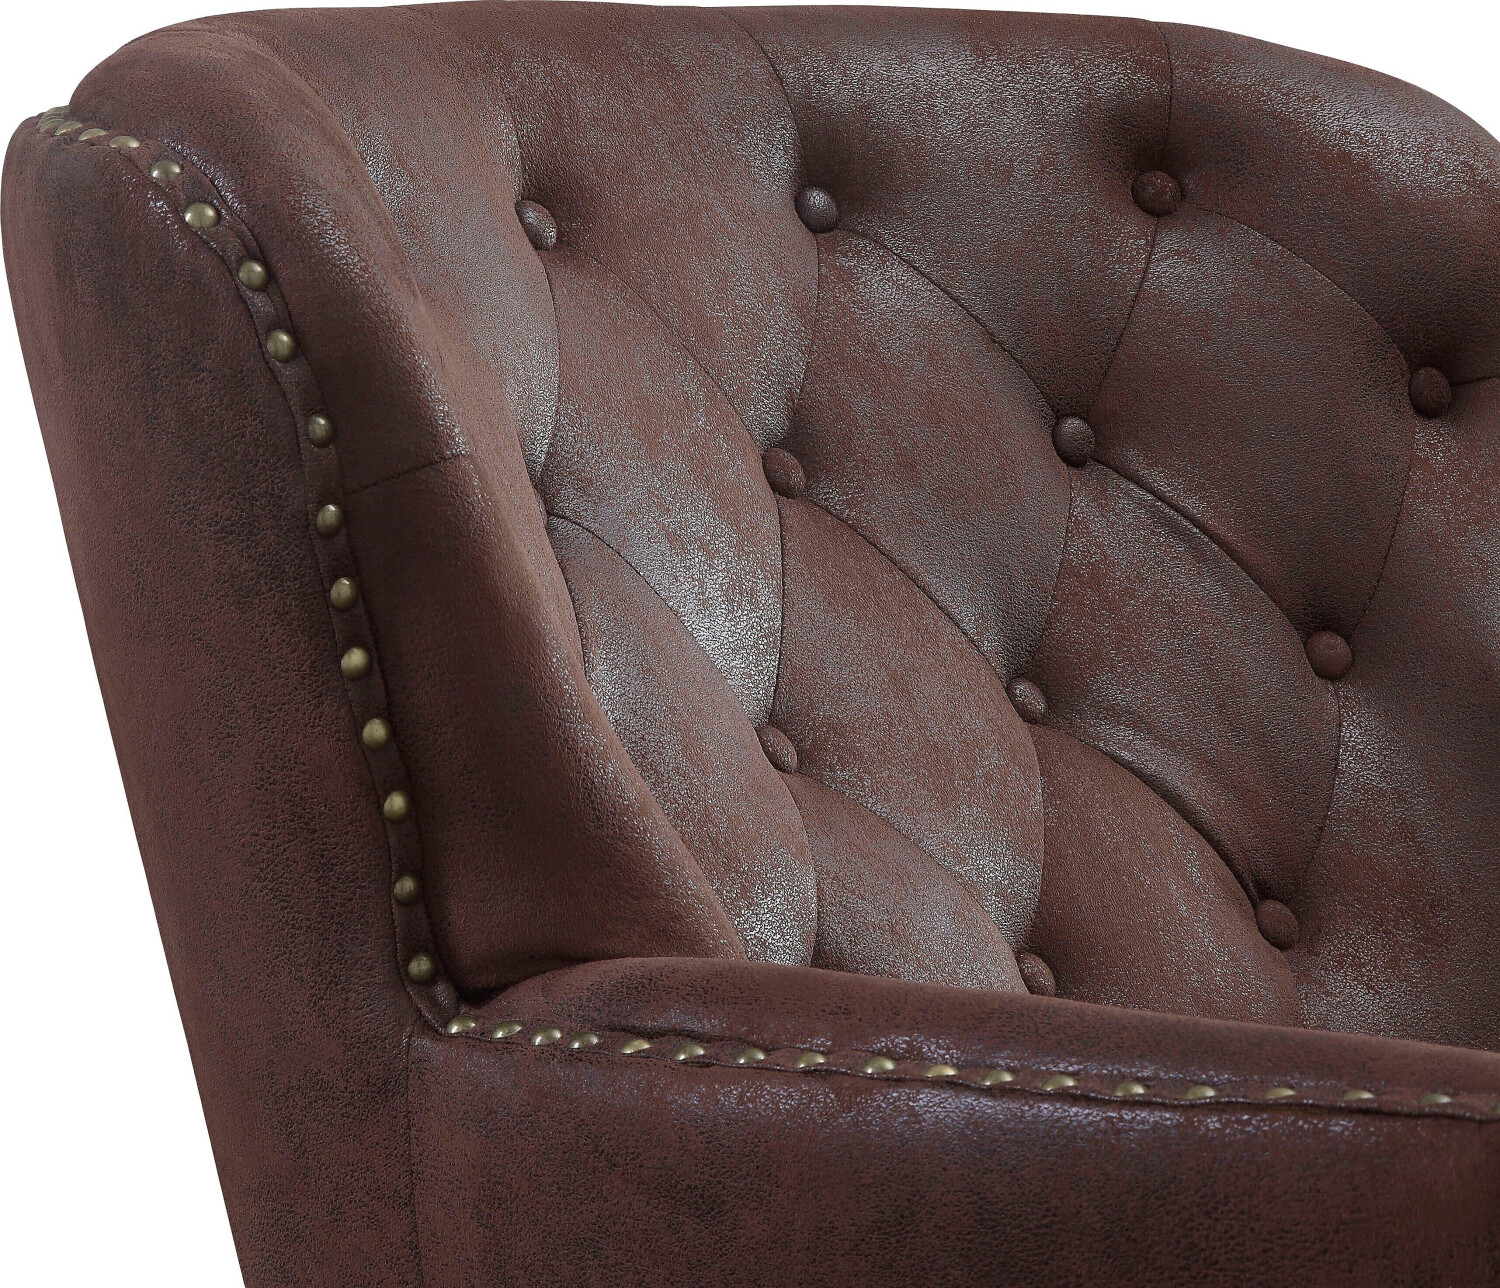 Atlantic Home Collection Sessel mit Taschenfederkern vintage braun ab  329,99 € | Preisvergleich bei